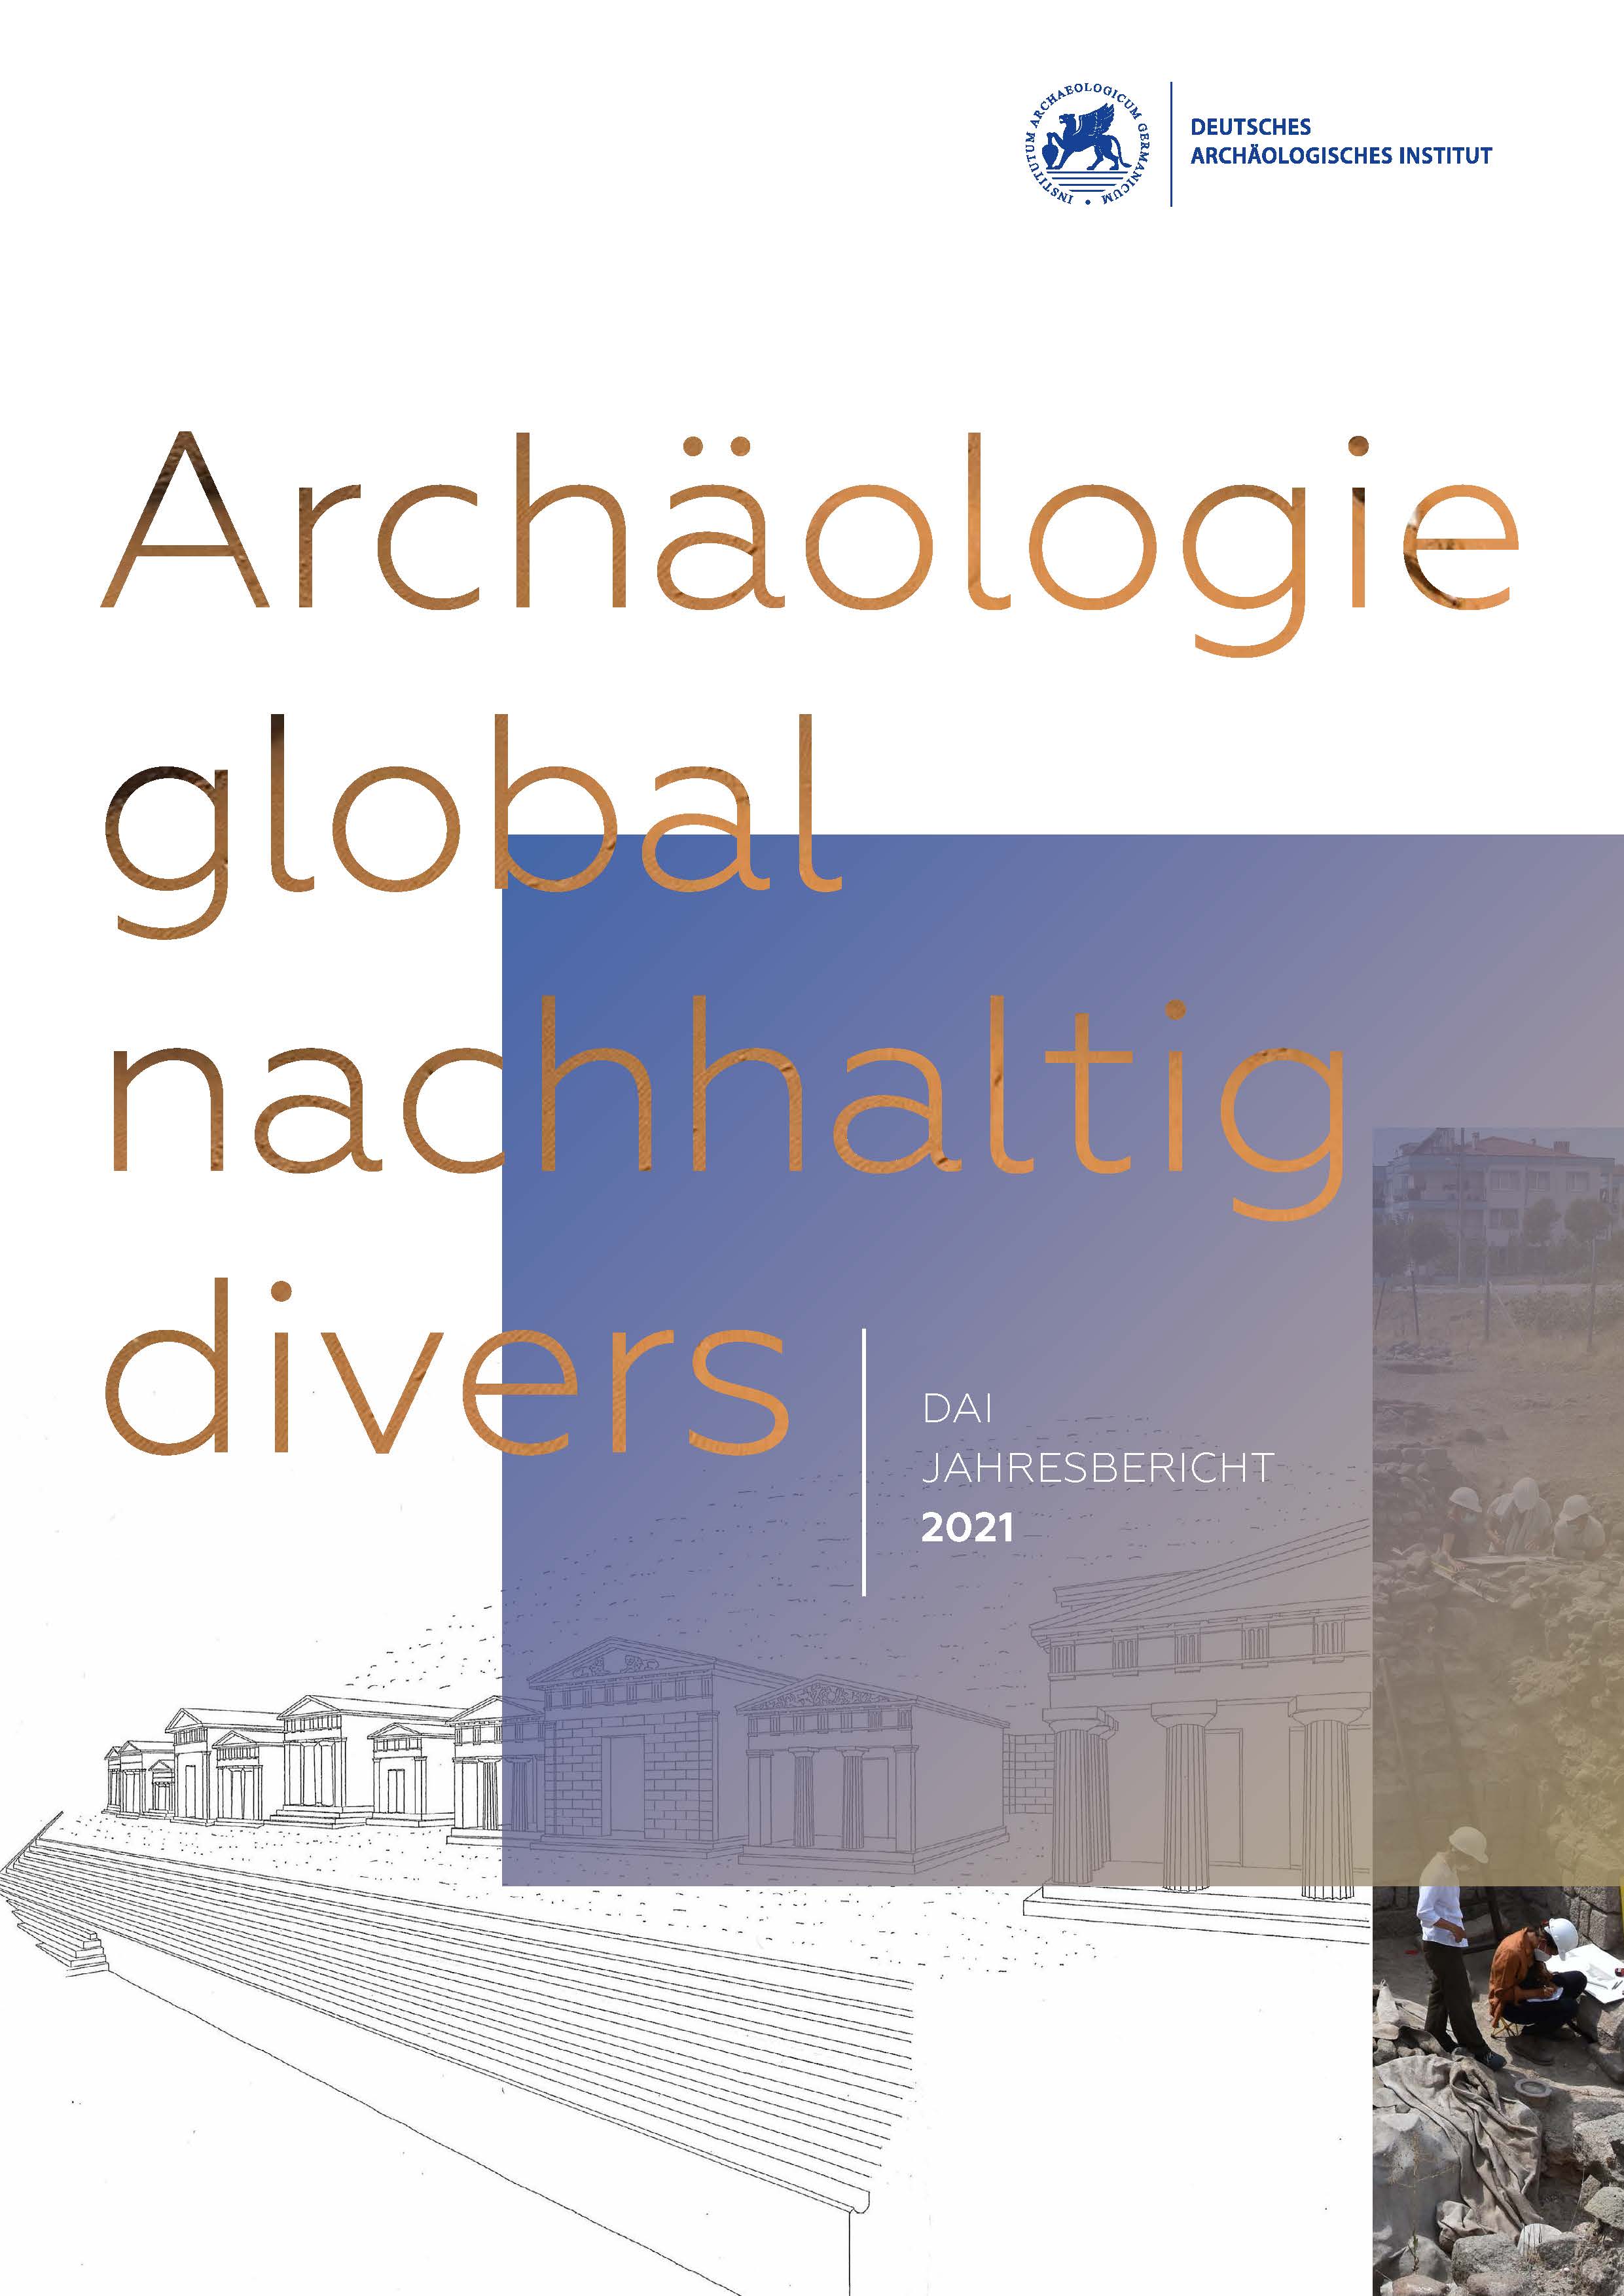 					Ansehen e-Jahresbericht 2021 des Deutschen Archäologischen Instituts
				